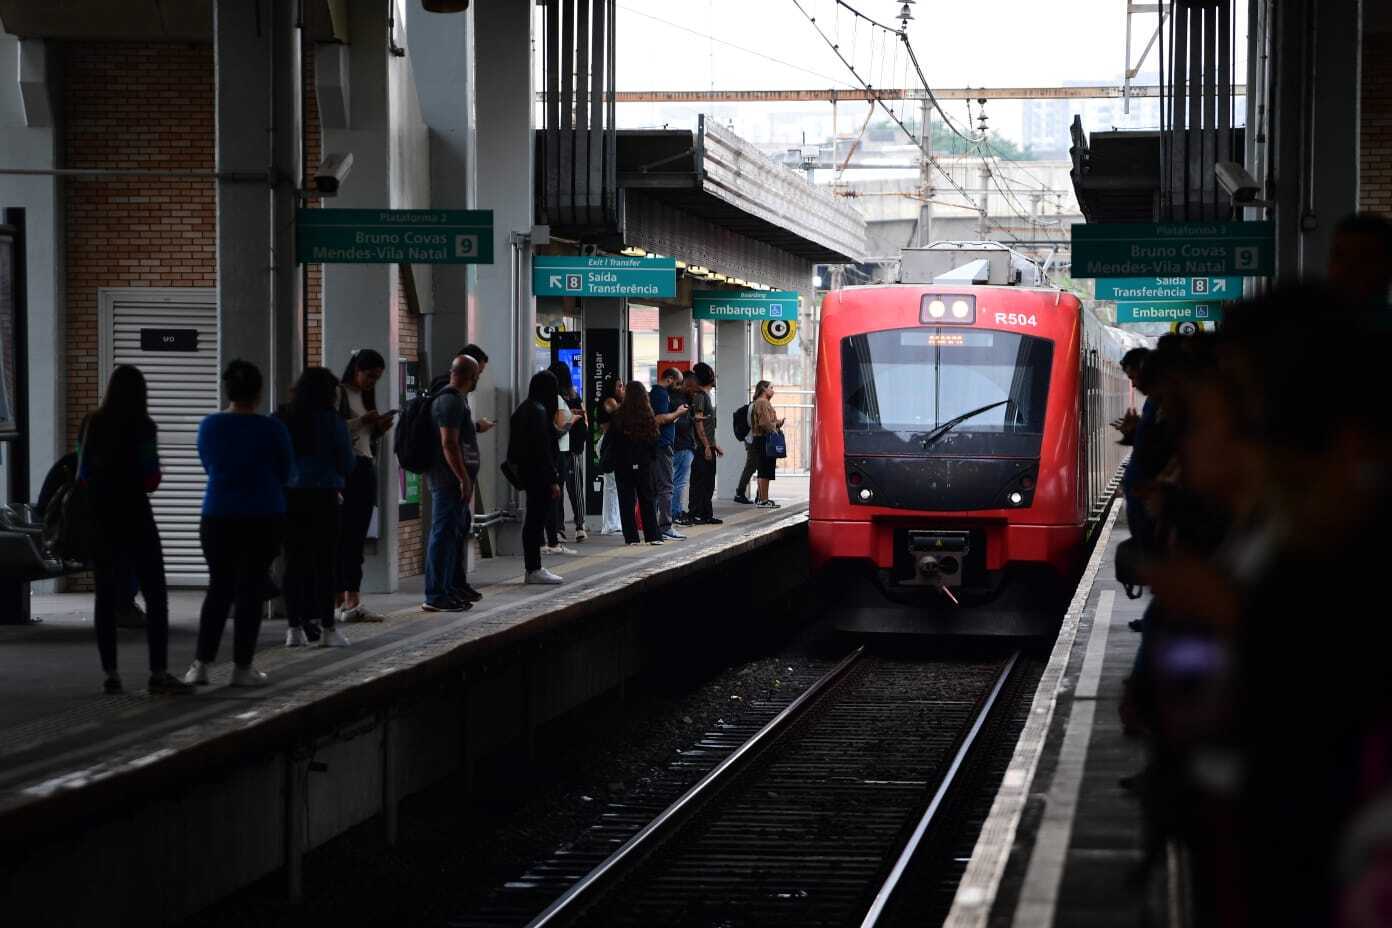 Trens voltam a circular pela Estação da Luz - Notícias - R7 São Paulo